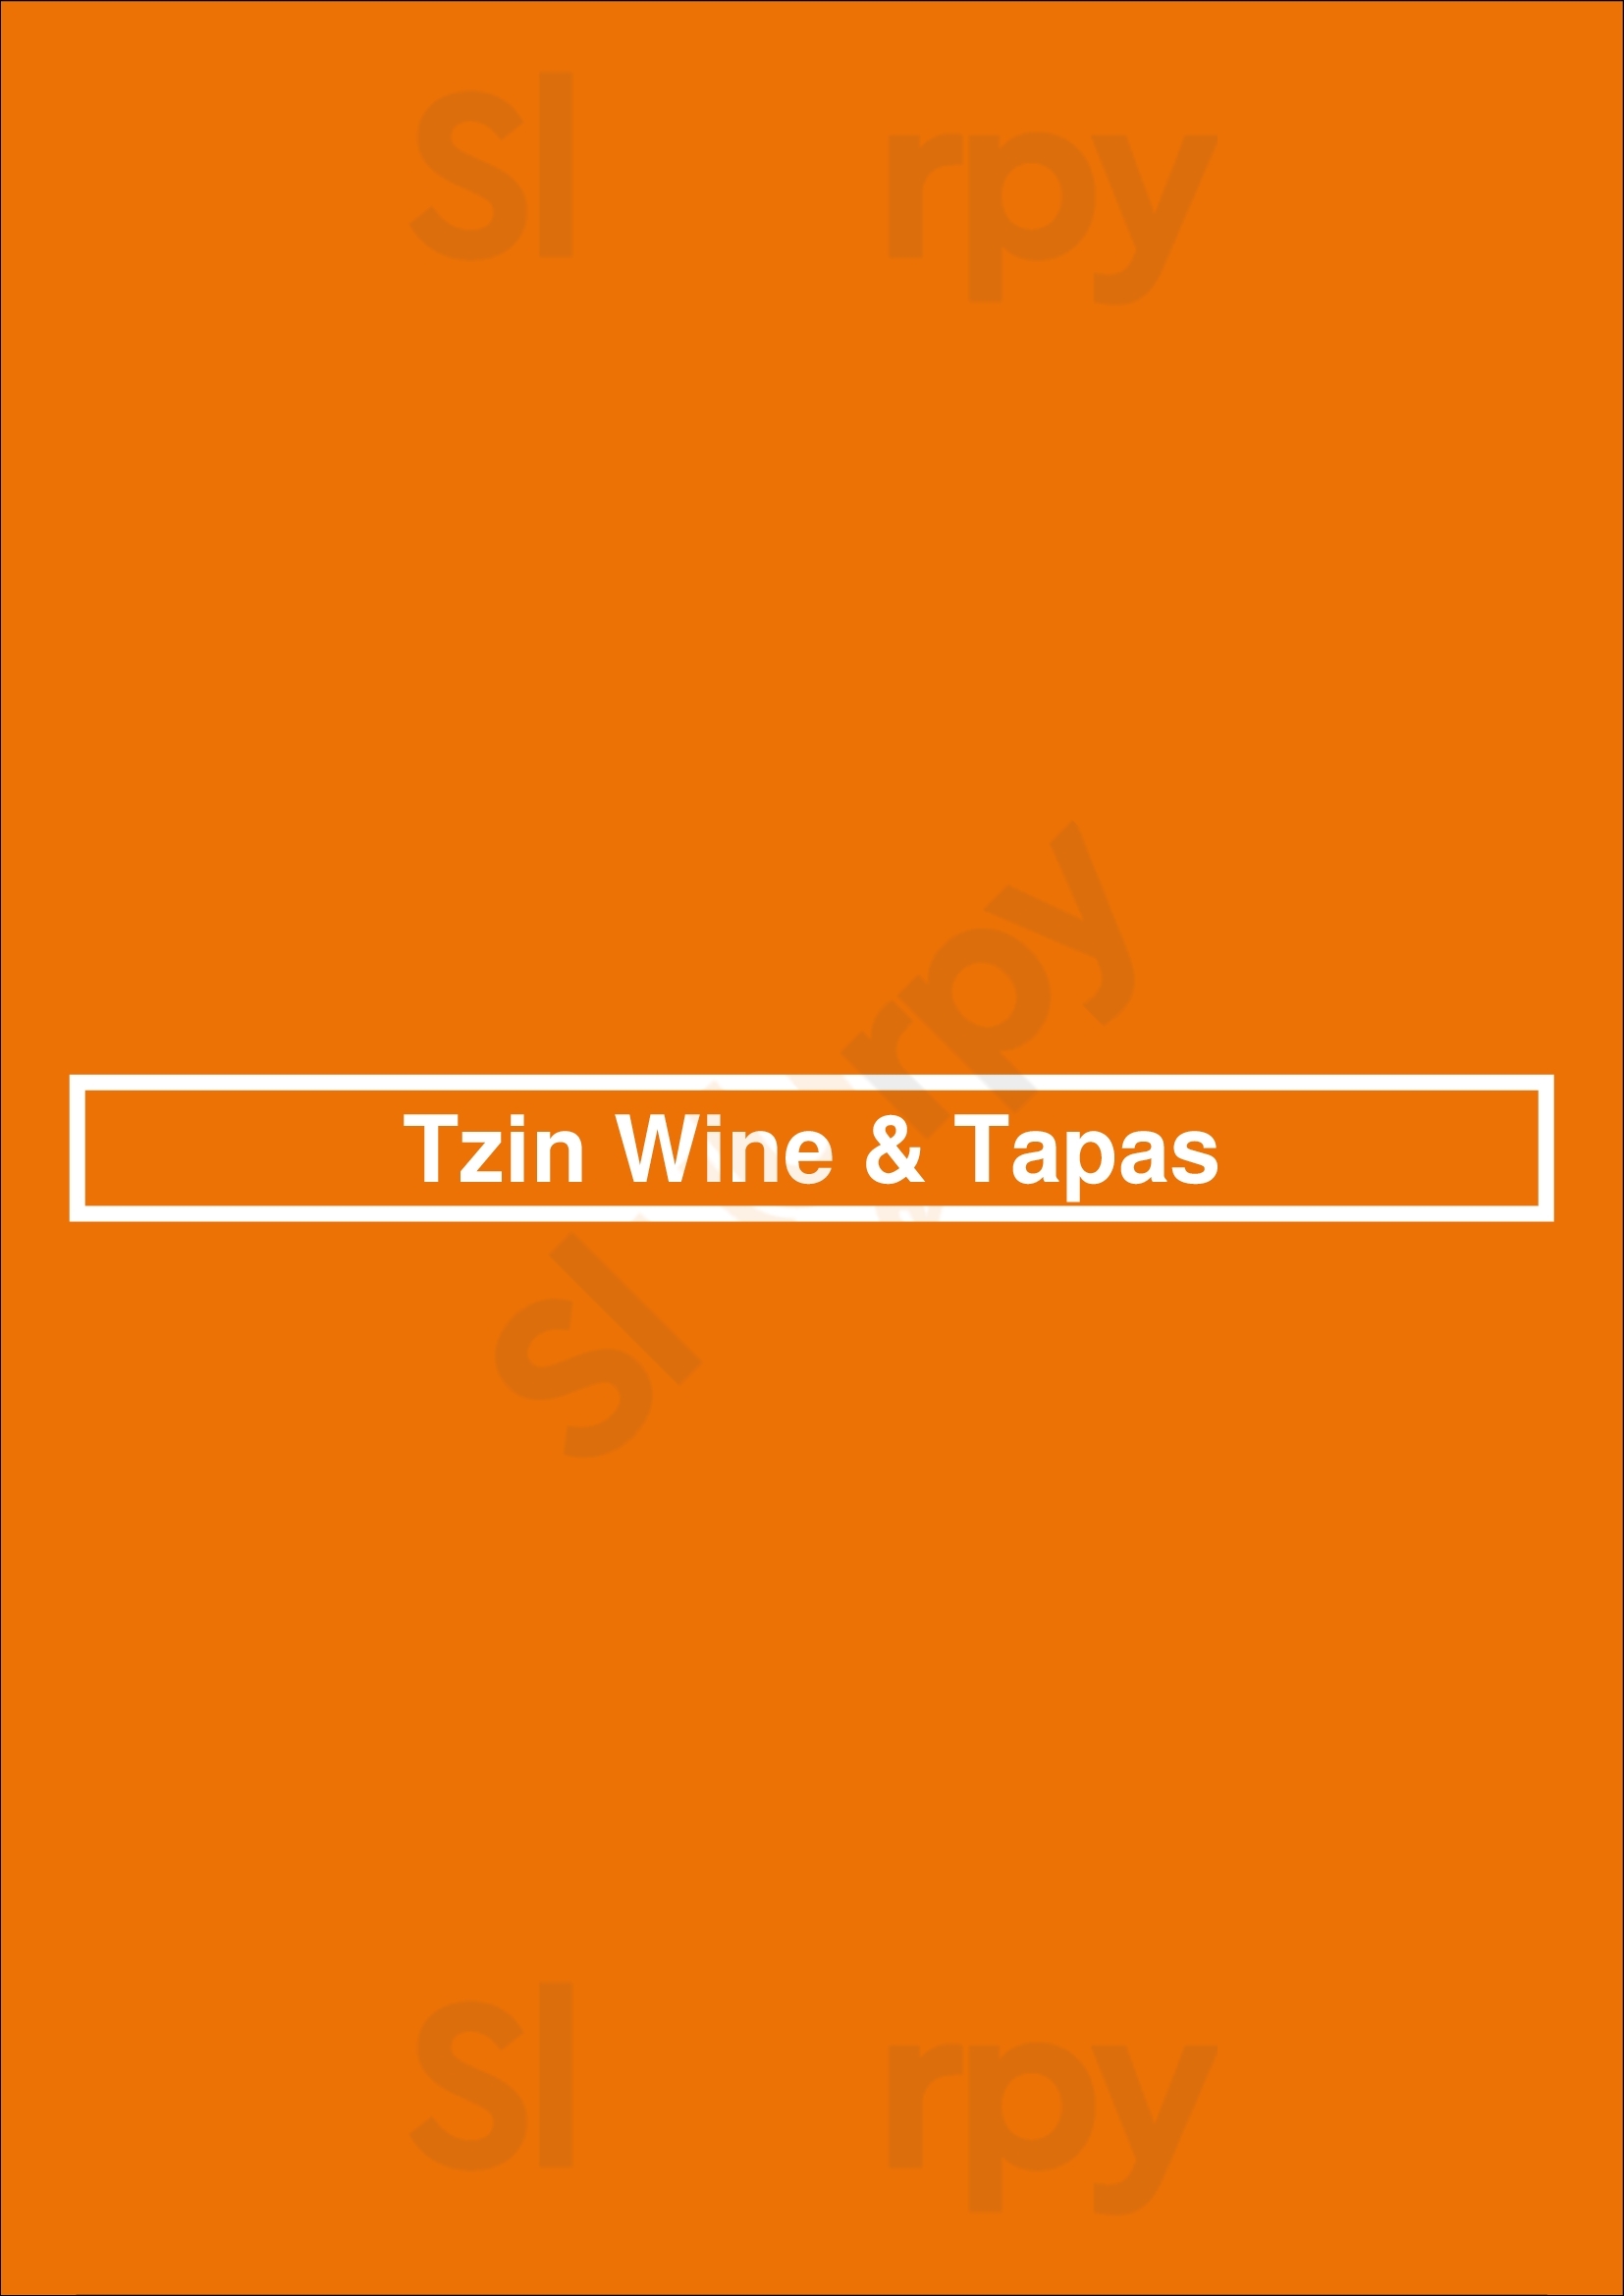 Tzin Wine & Tapas Edmonton Menu - 1